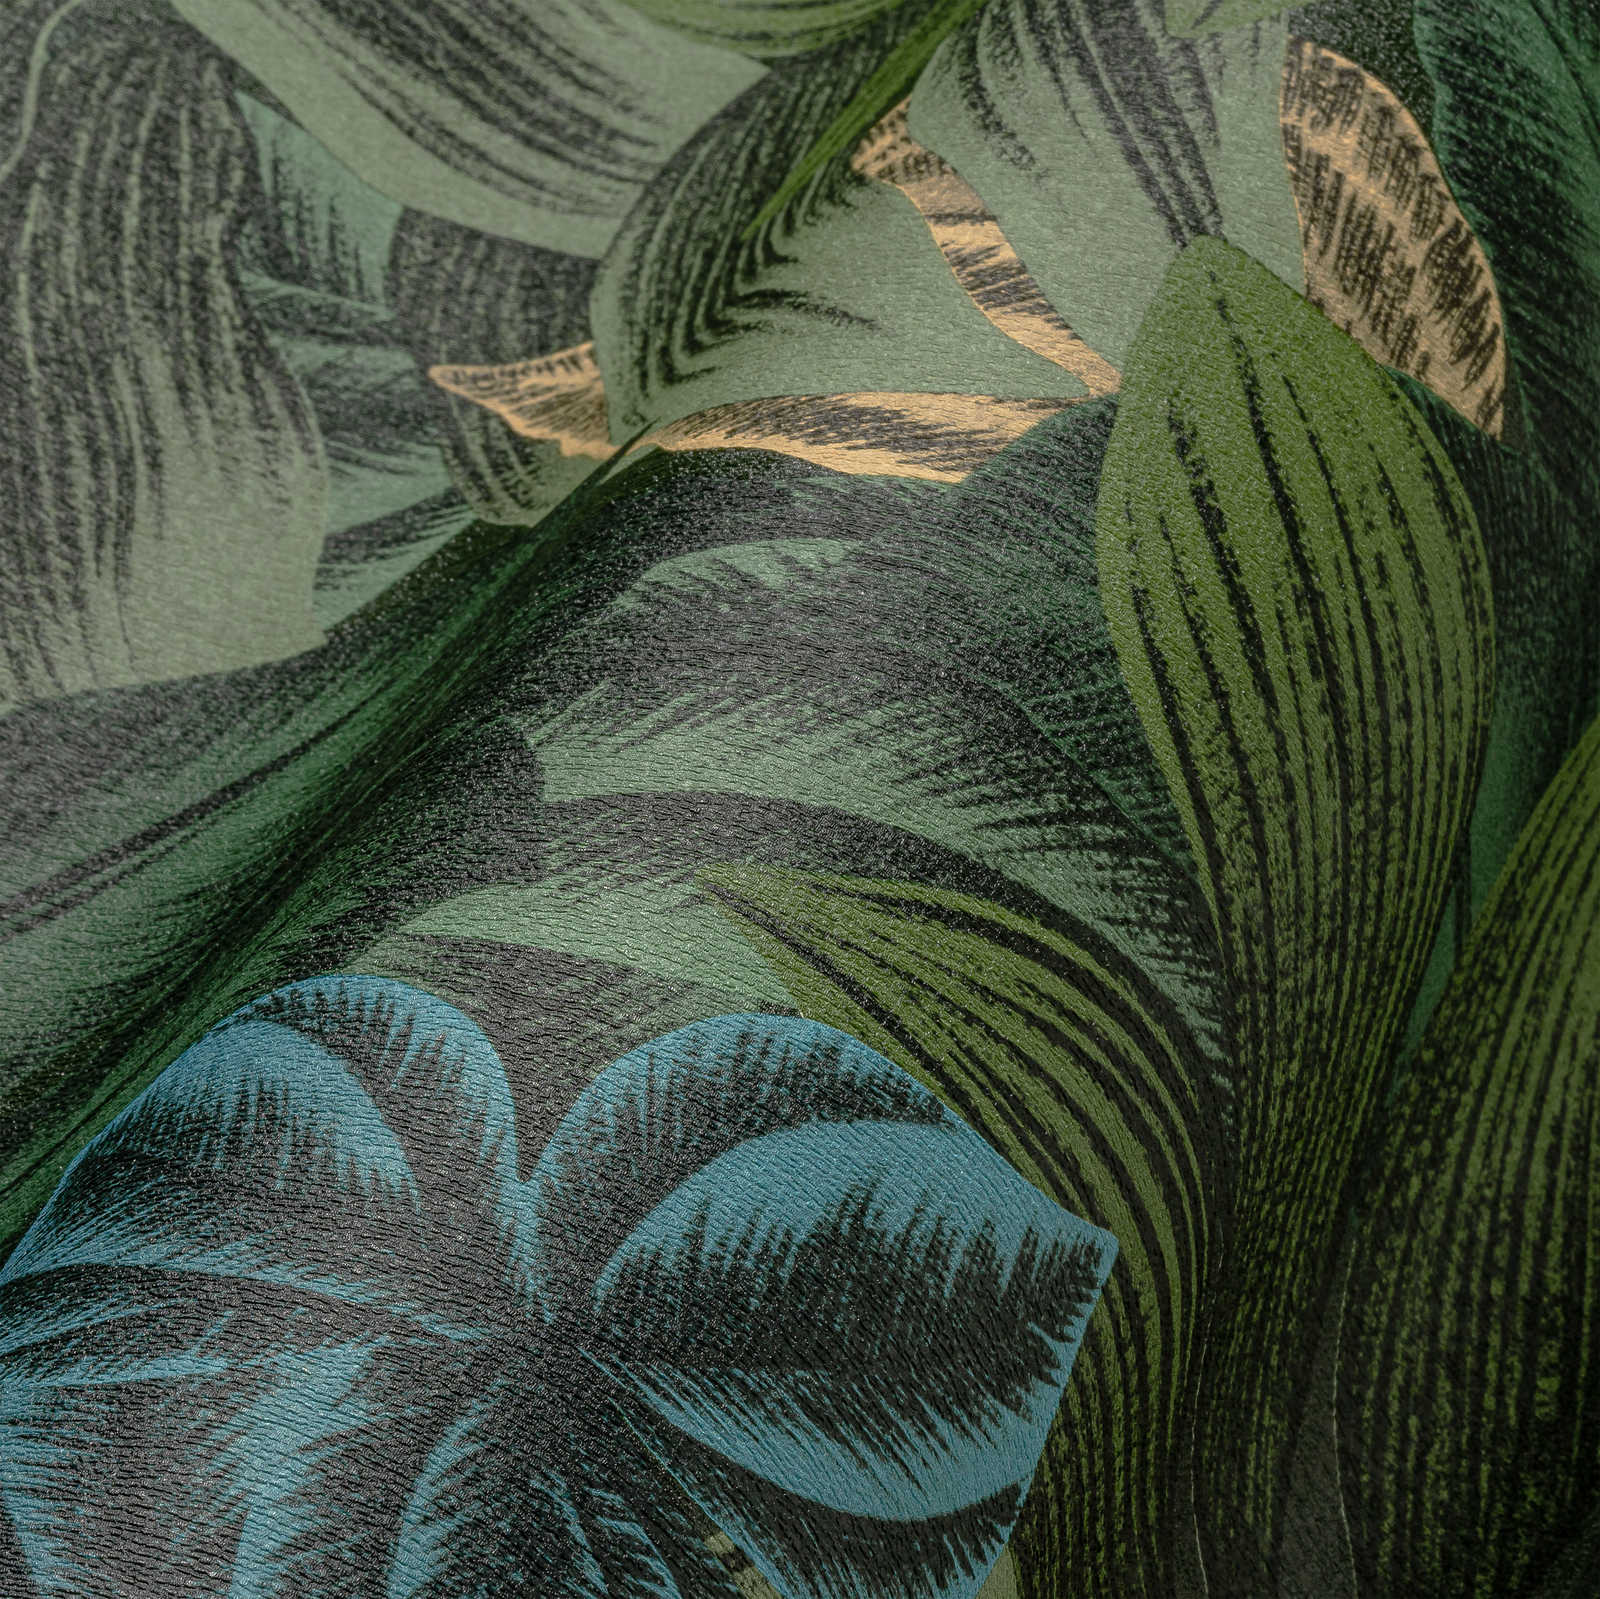             Dschungeltapete mit tropischen Blättermuster – Grün, Gelb
        